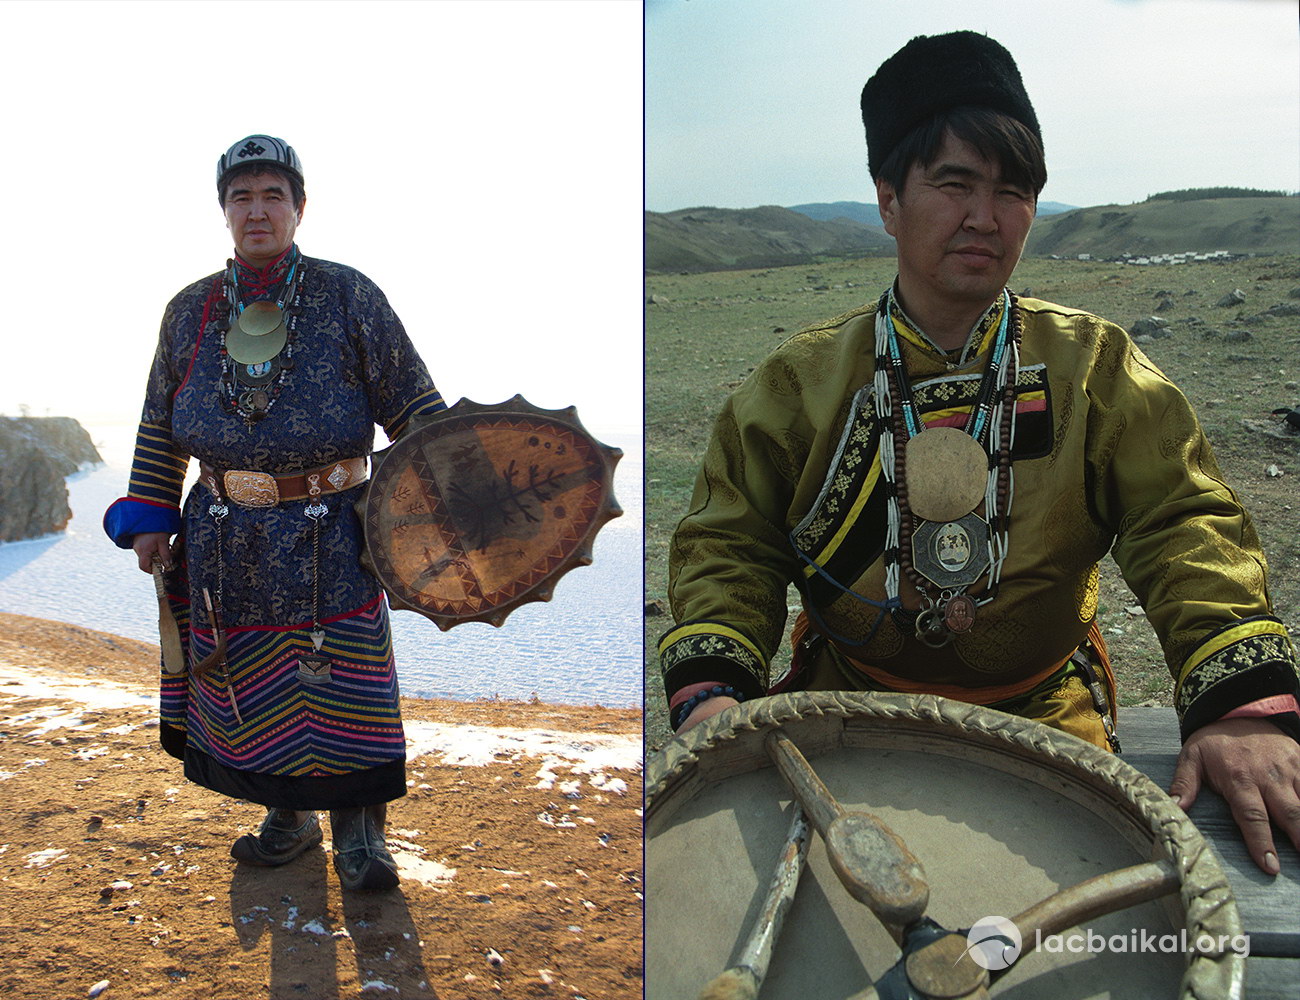 Le Chaman de l'île d'Olkhon Valentin Khagdayev en costume traditionnel avec son tambour